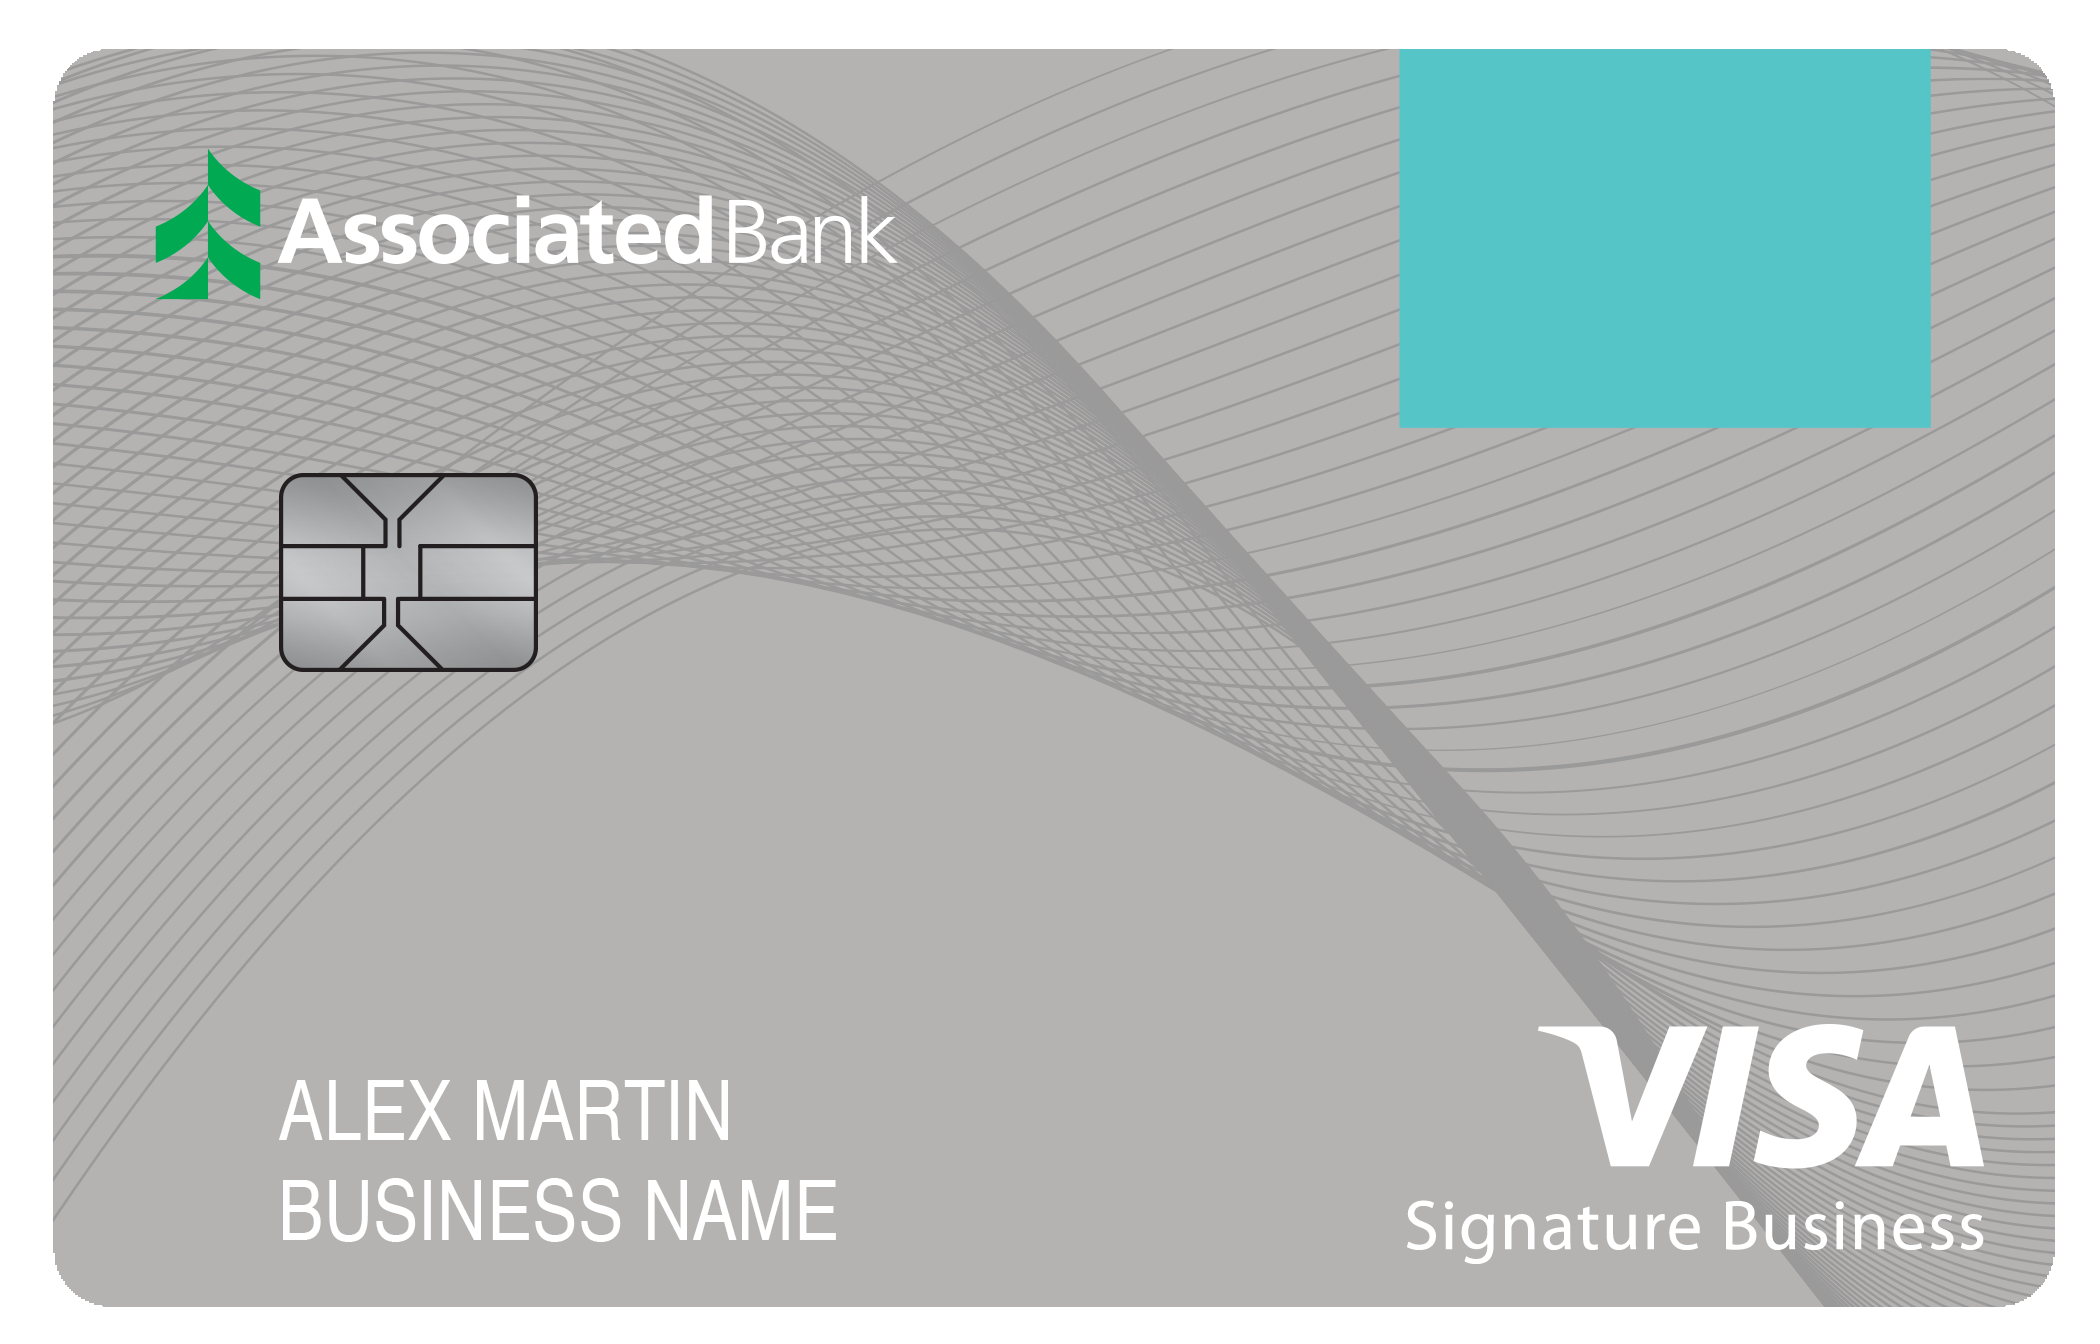 Associated Bank Smart Business Rewards Card